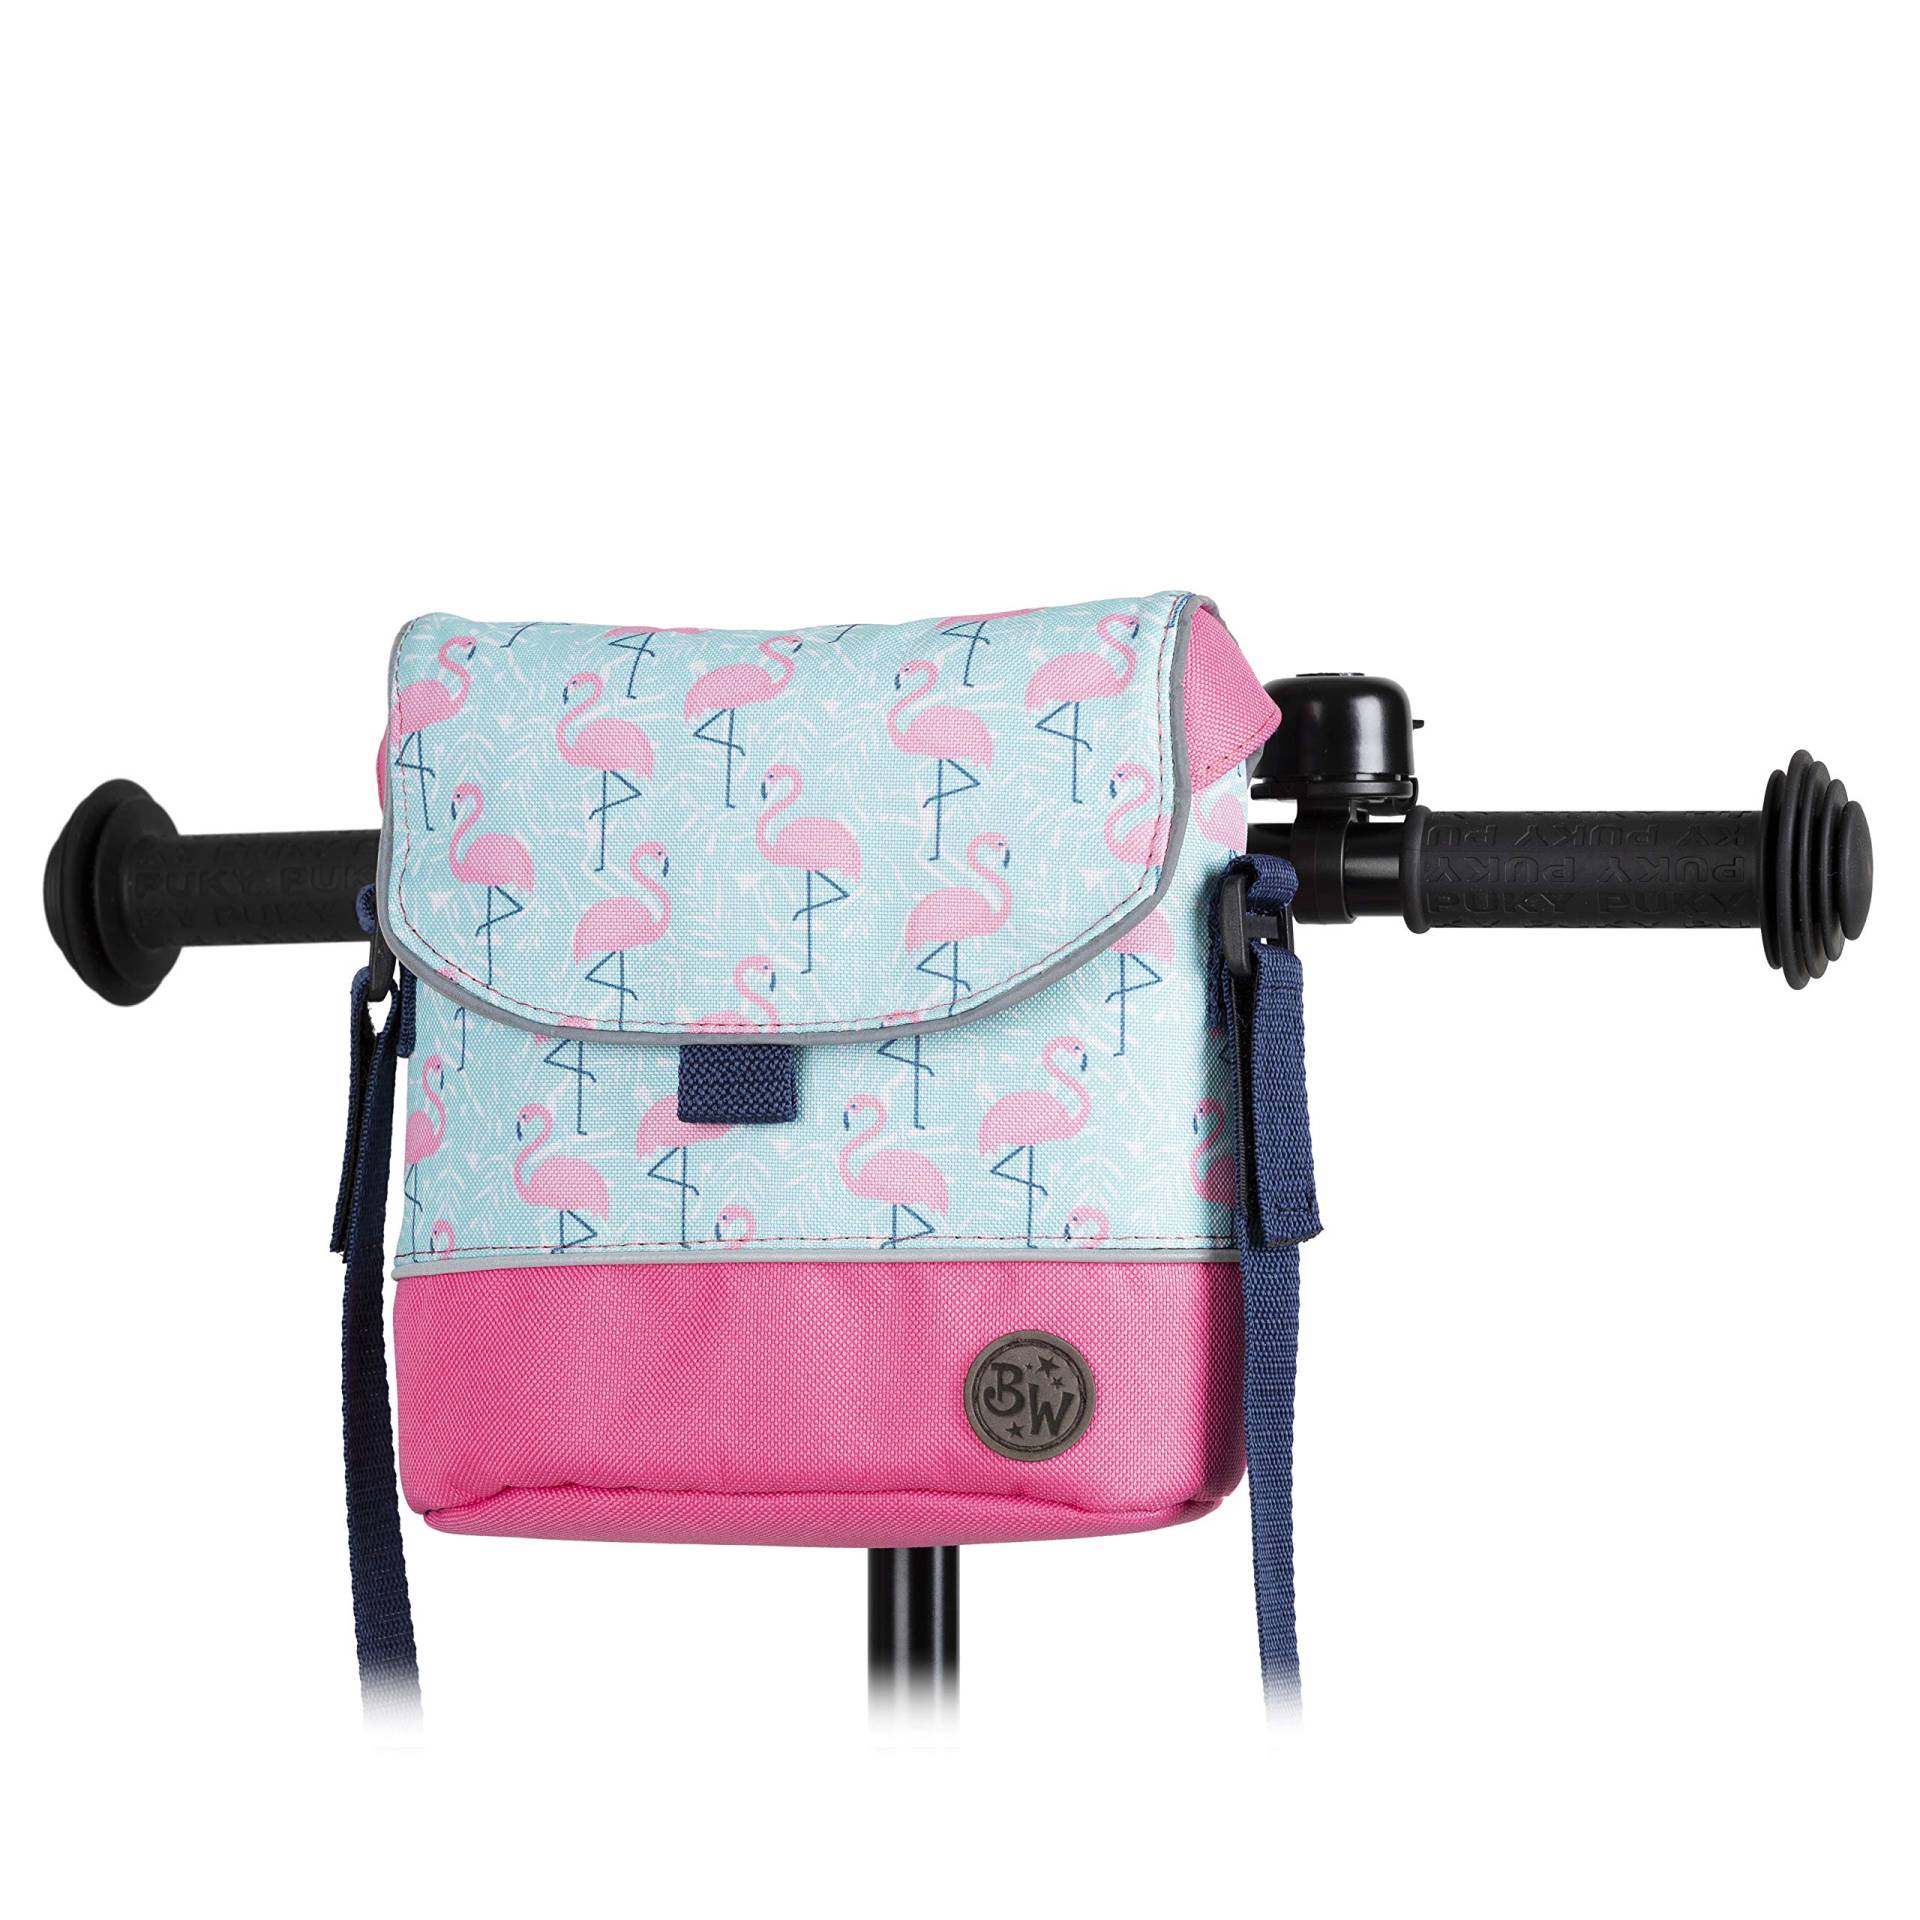 BAMBINIWELT Lenkertasche Tasche kompatibel mit Puky mit Woom Laufrad Räder Roller Fahrrad Fahrradtasche für Kinder wasserabweisend mit Schultergurt (Modell 25) von BambiniWelt by Rafael K.